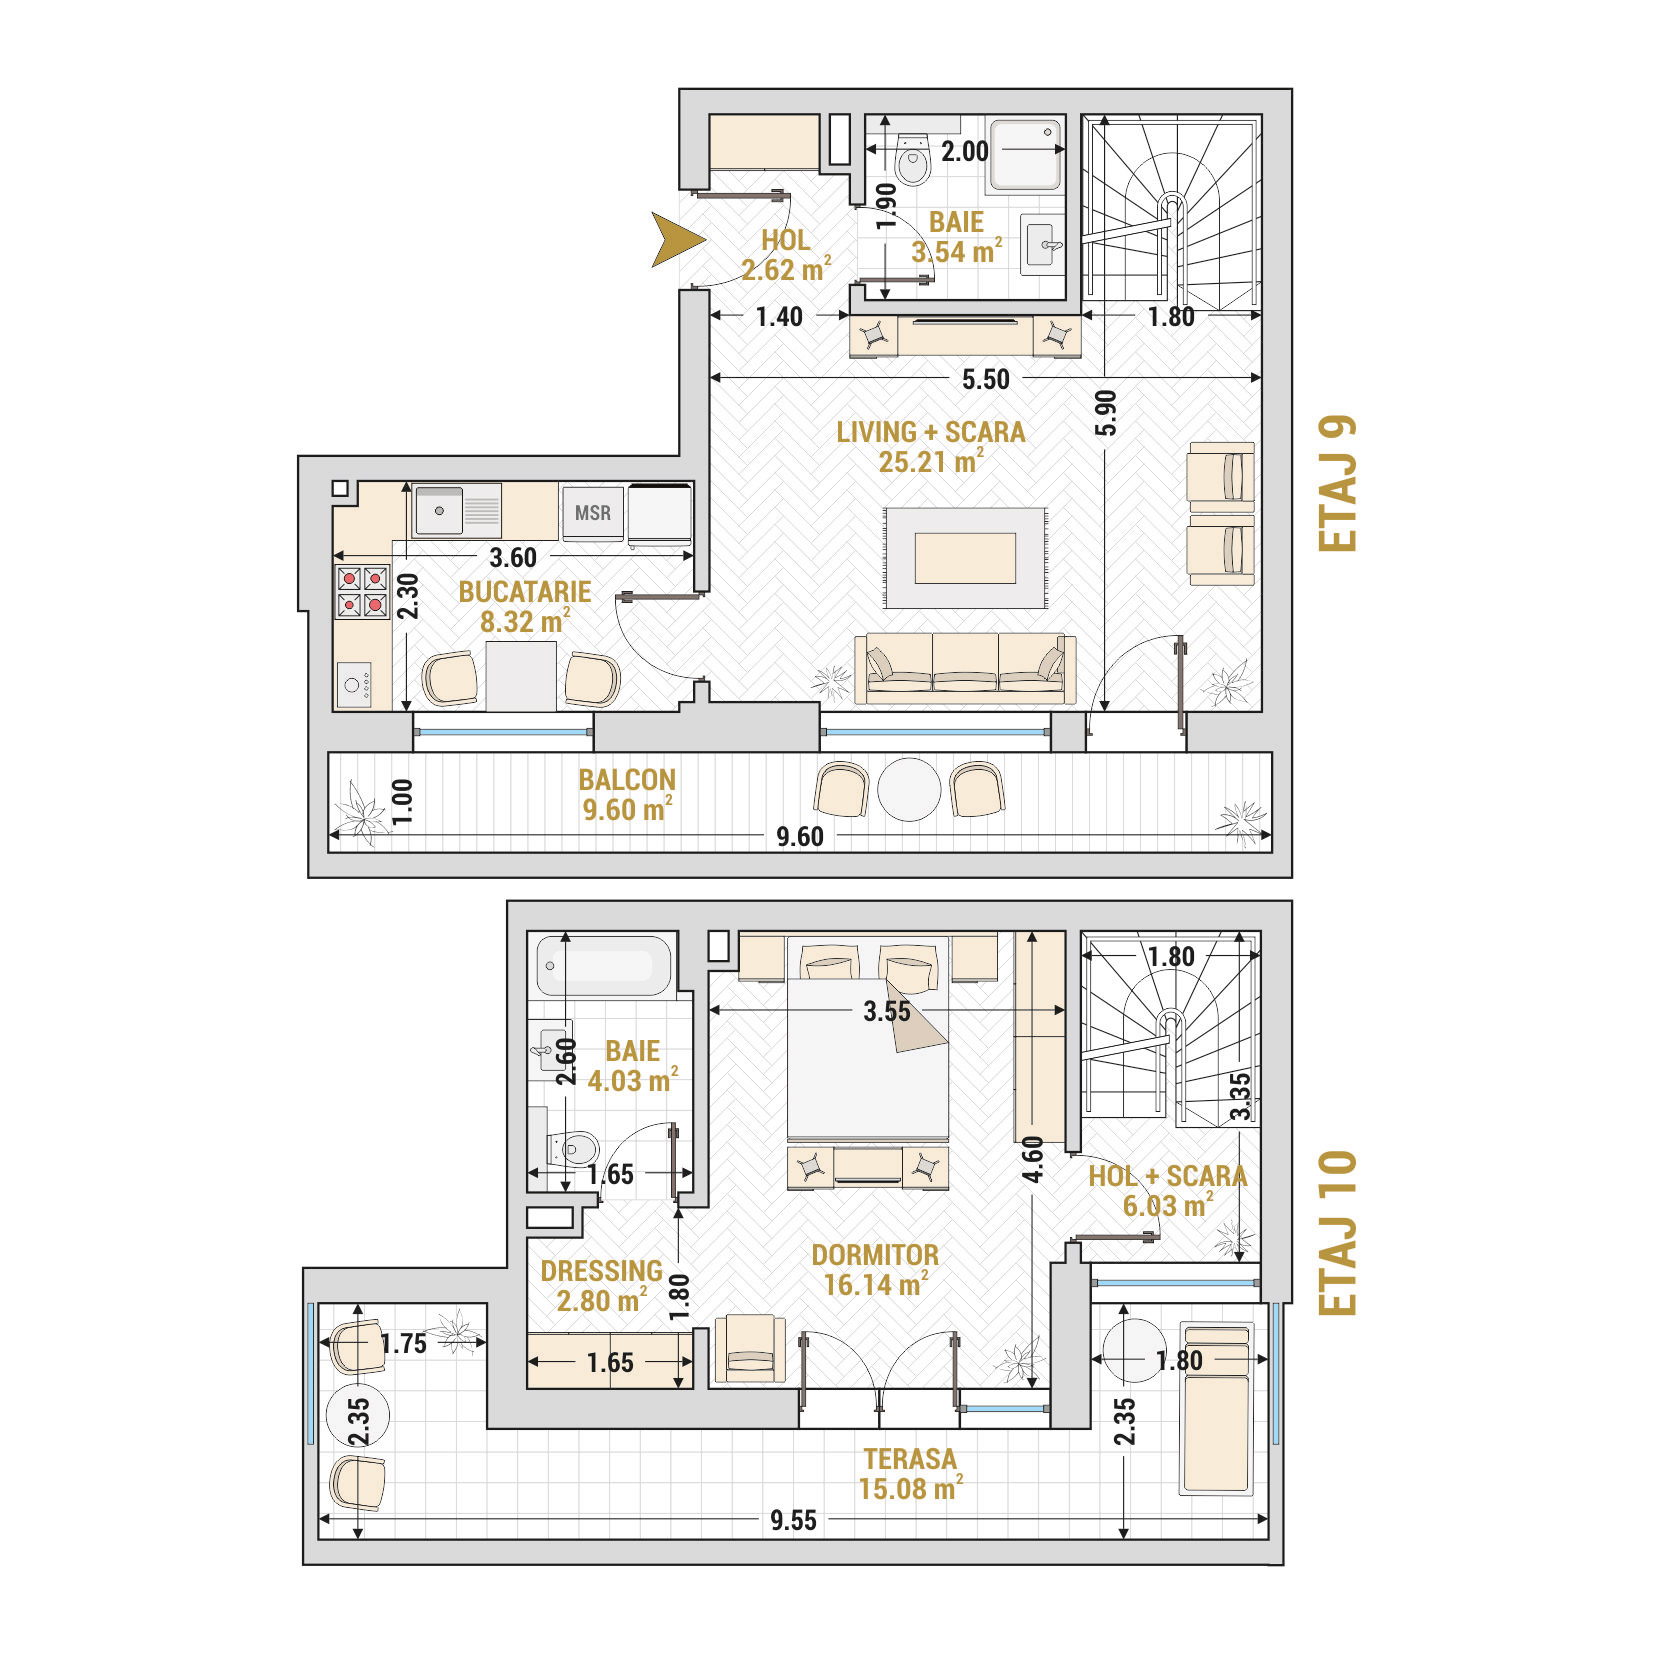 Penthouse 2 Camere Tip 3 Corp 9 - Drumul Taberei Residence - Apartamente de vanzare Bucuresti - Suprafata utila totala - 93.37 mp